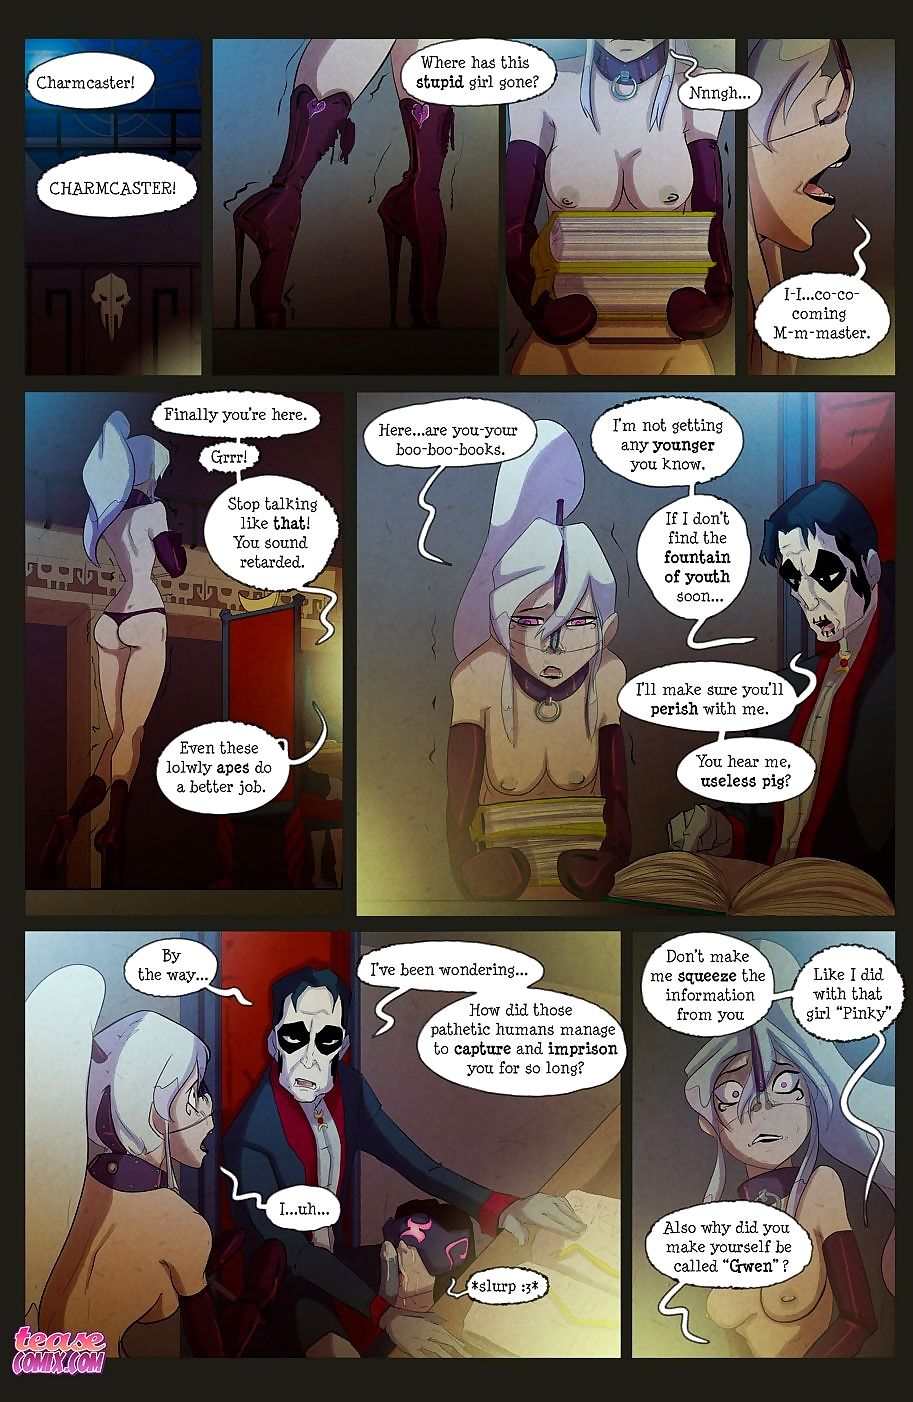 die Hexe Mit keine name - Teil 3 page 1